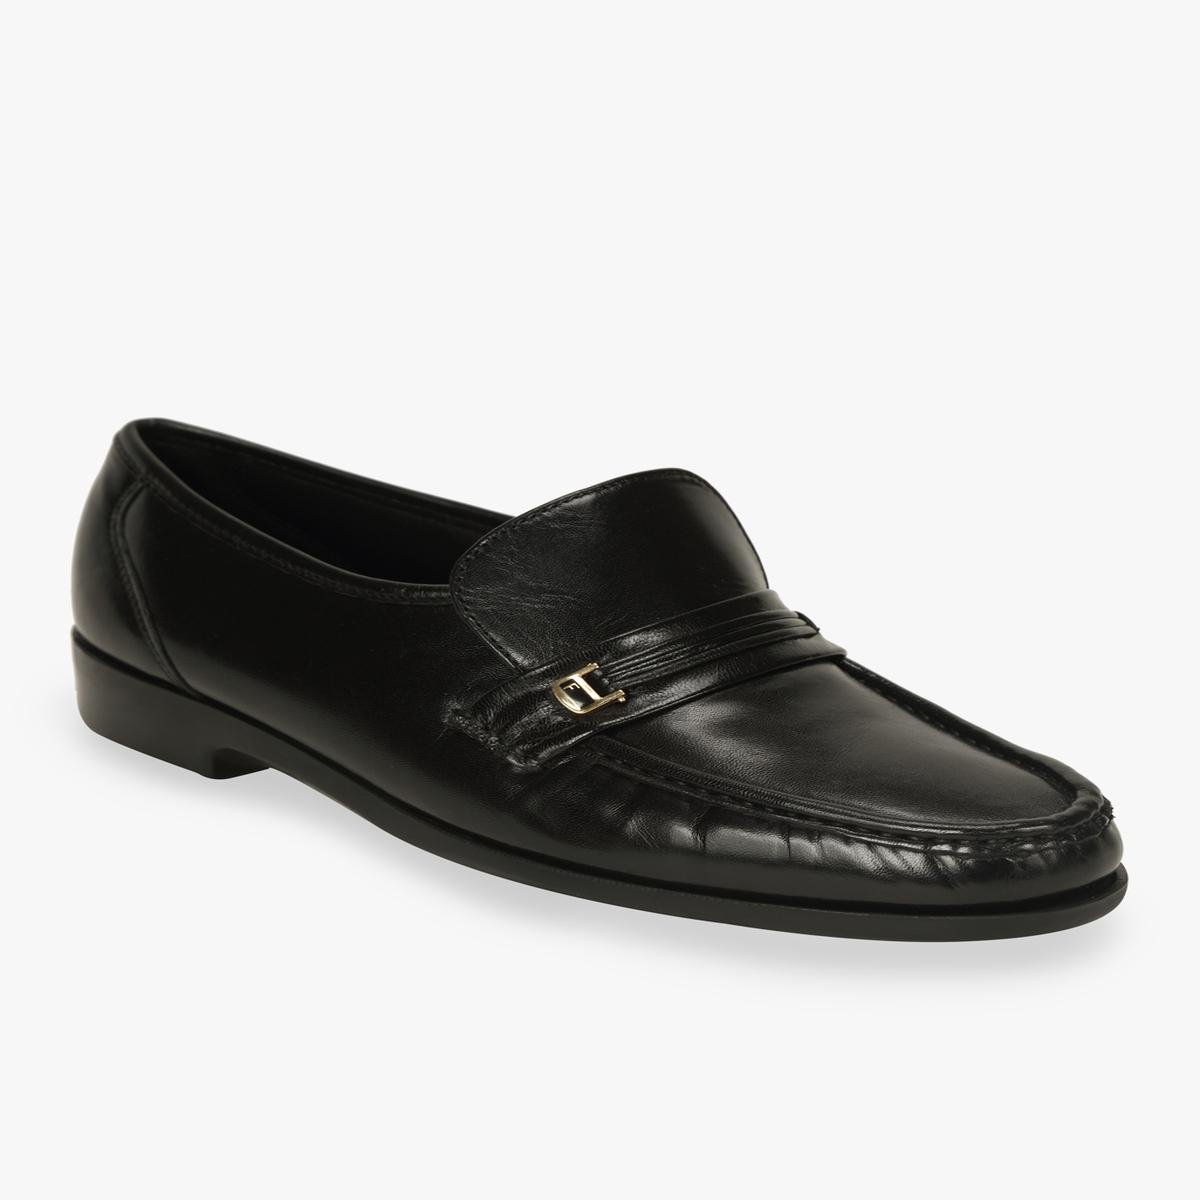 Buy Florsheim Black Formal Moccasin Online | SKU:281-10414-11-40 - Metro  Shoes